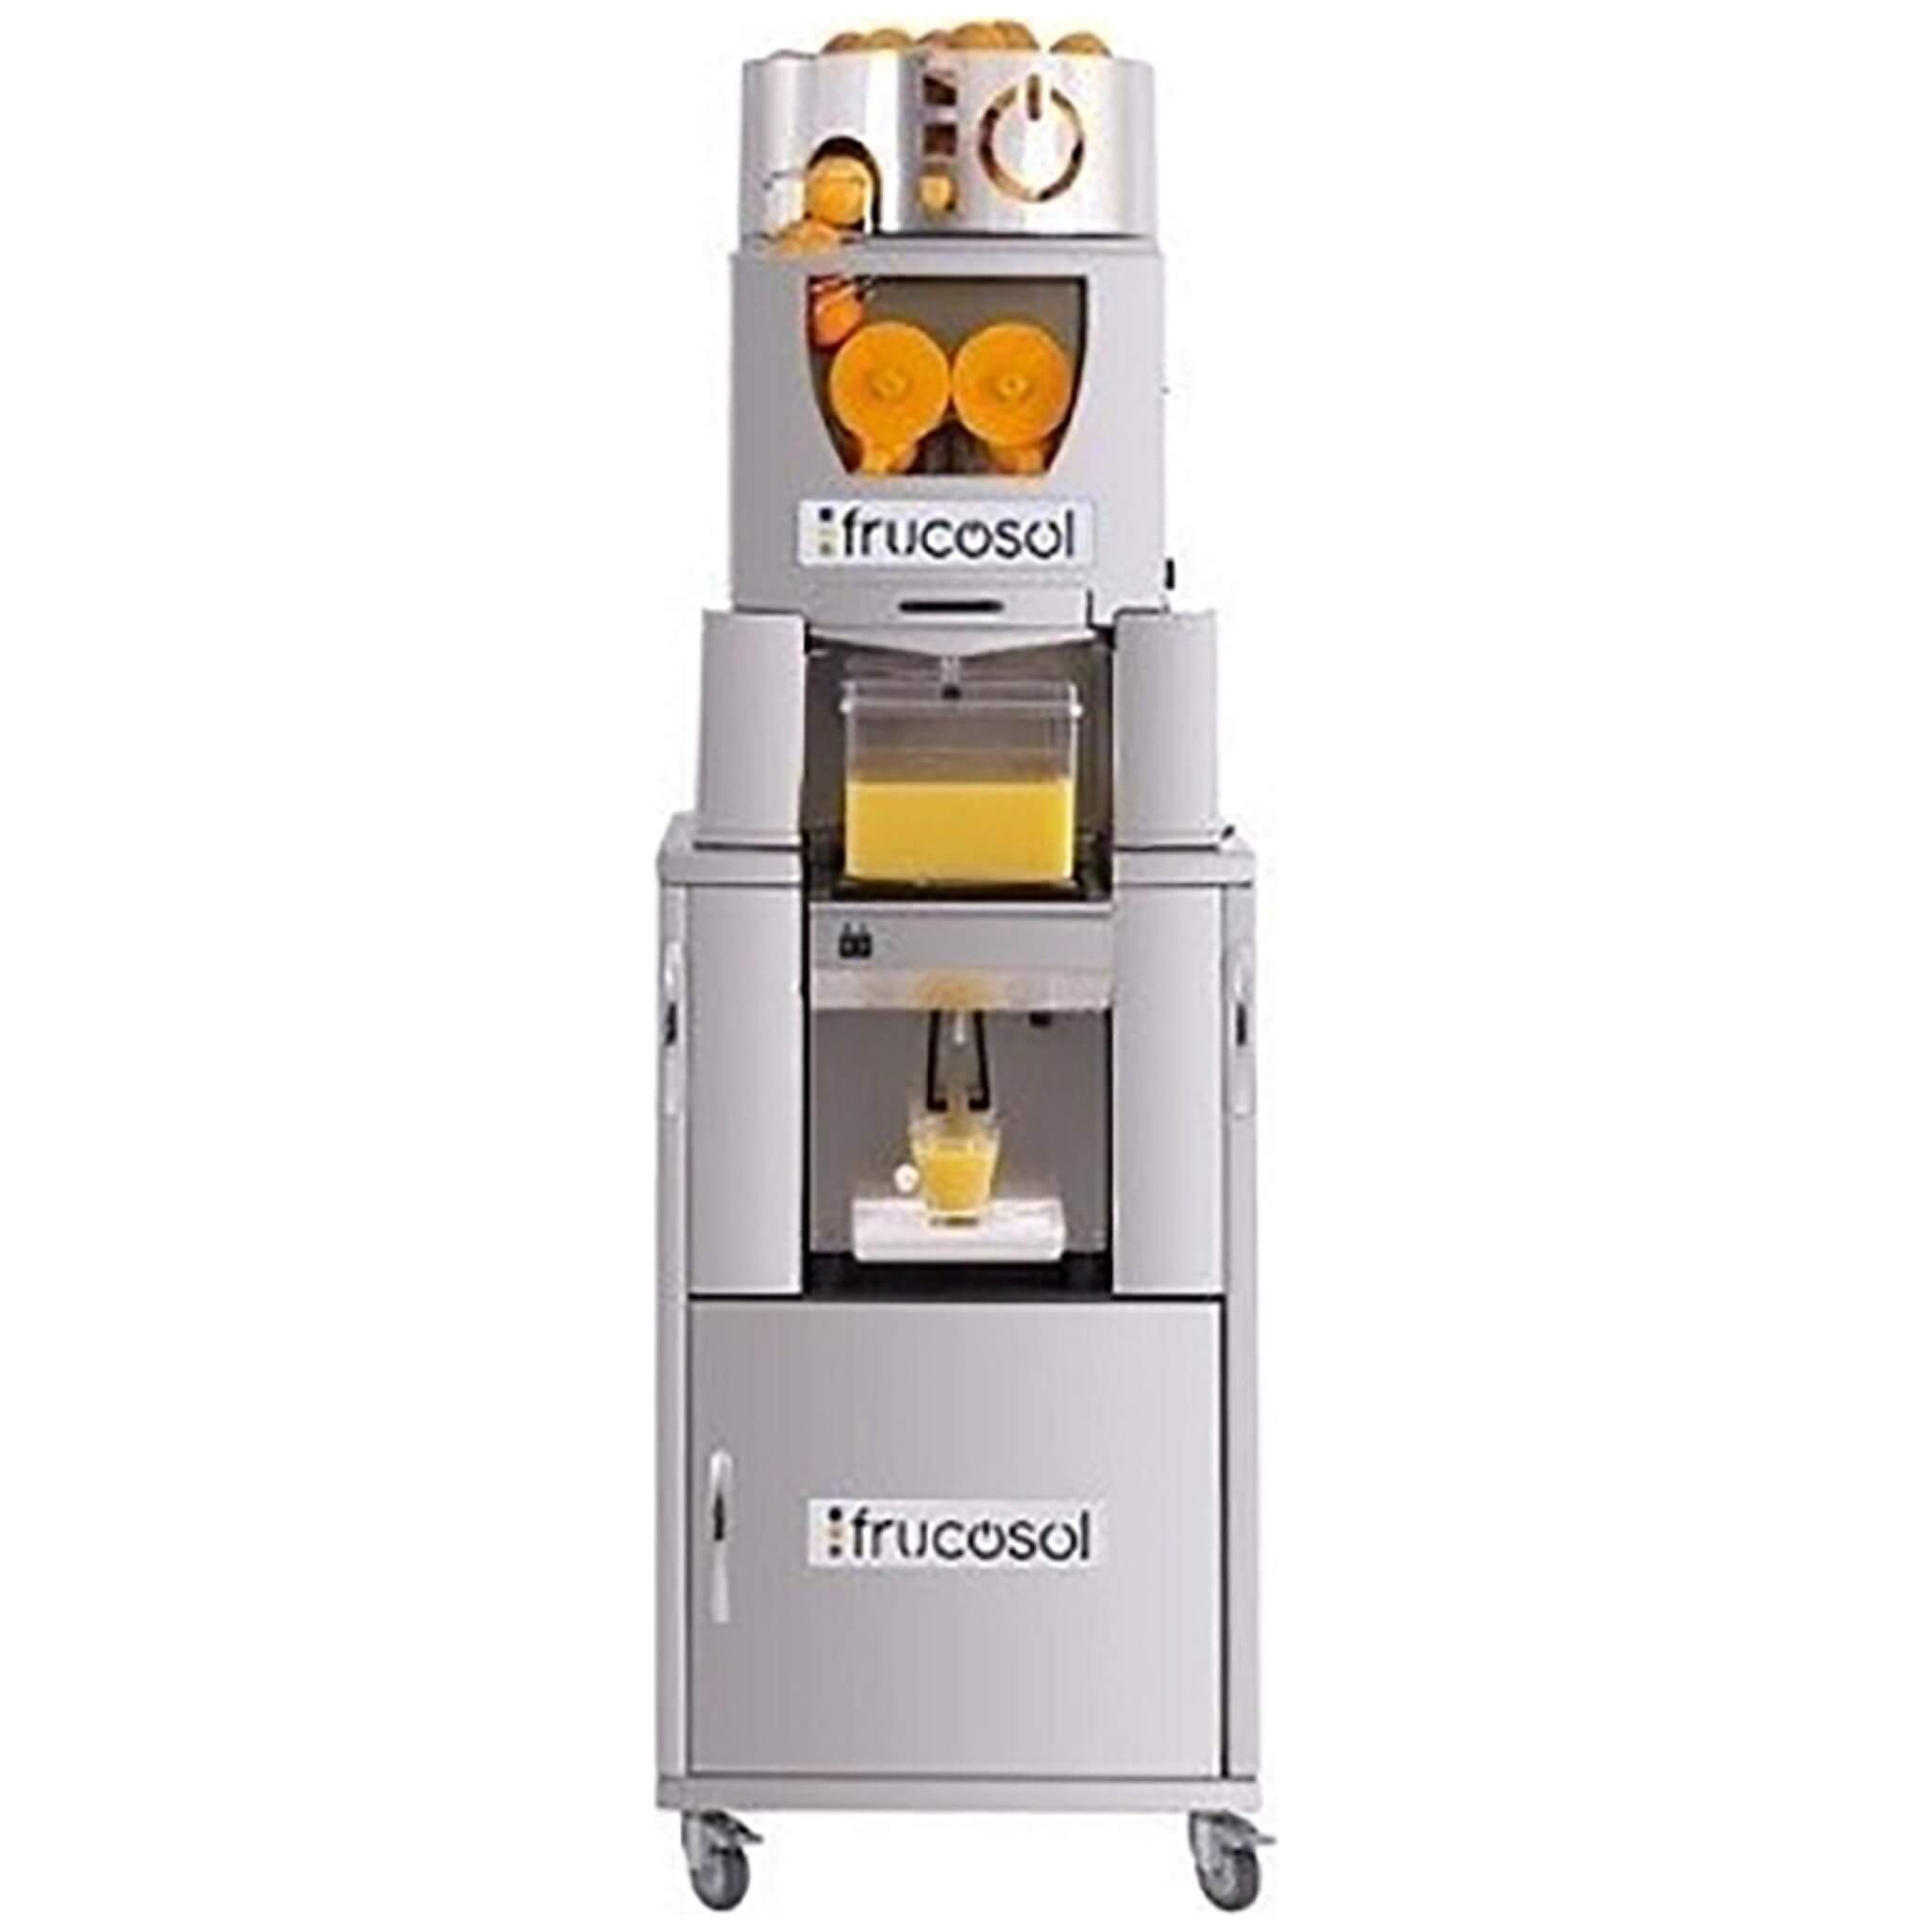 0779-portokalostiftis-automatos-frucosol-freezer